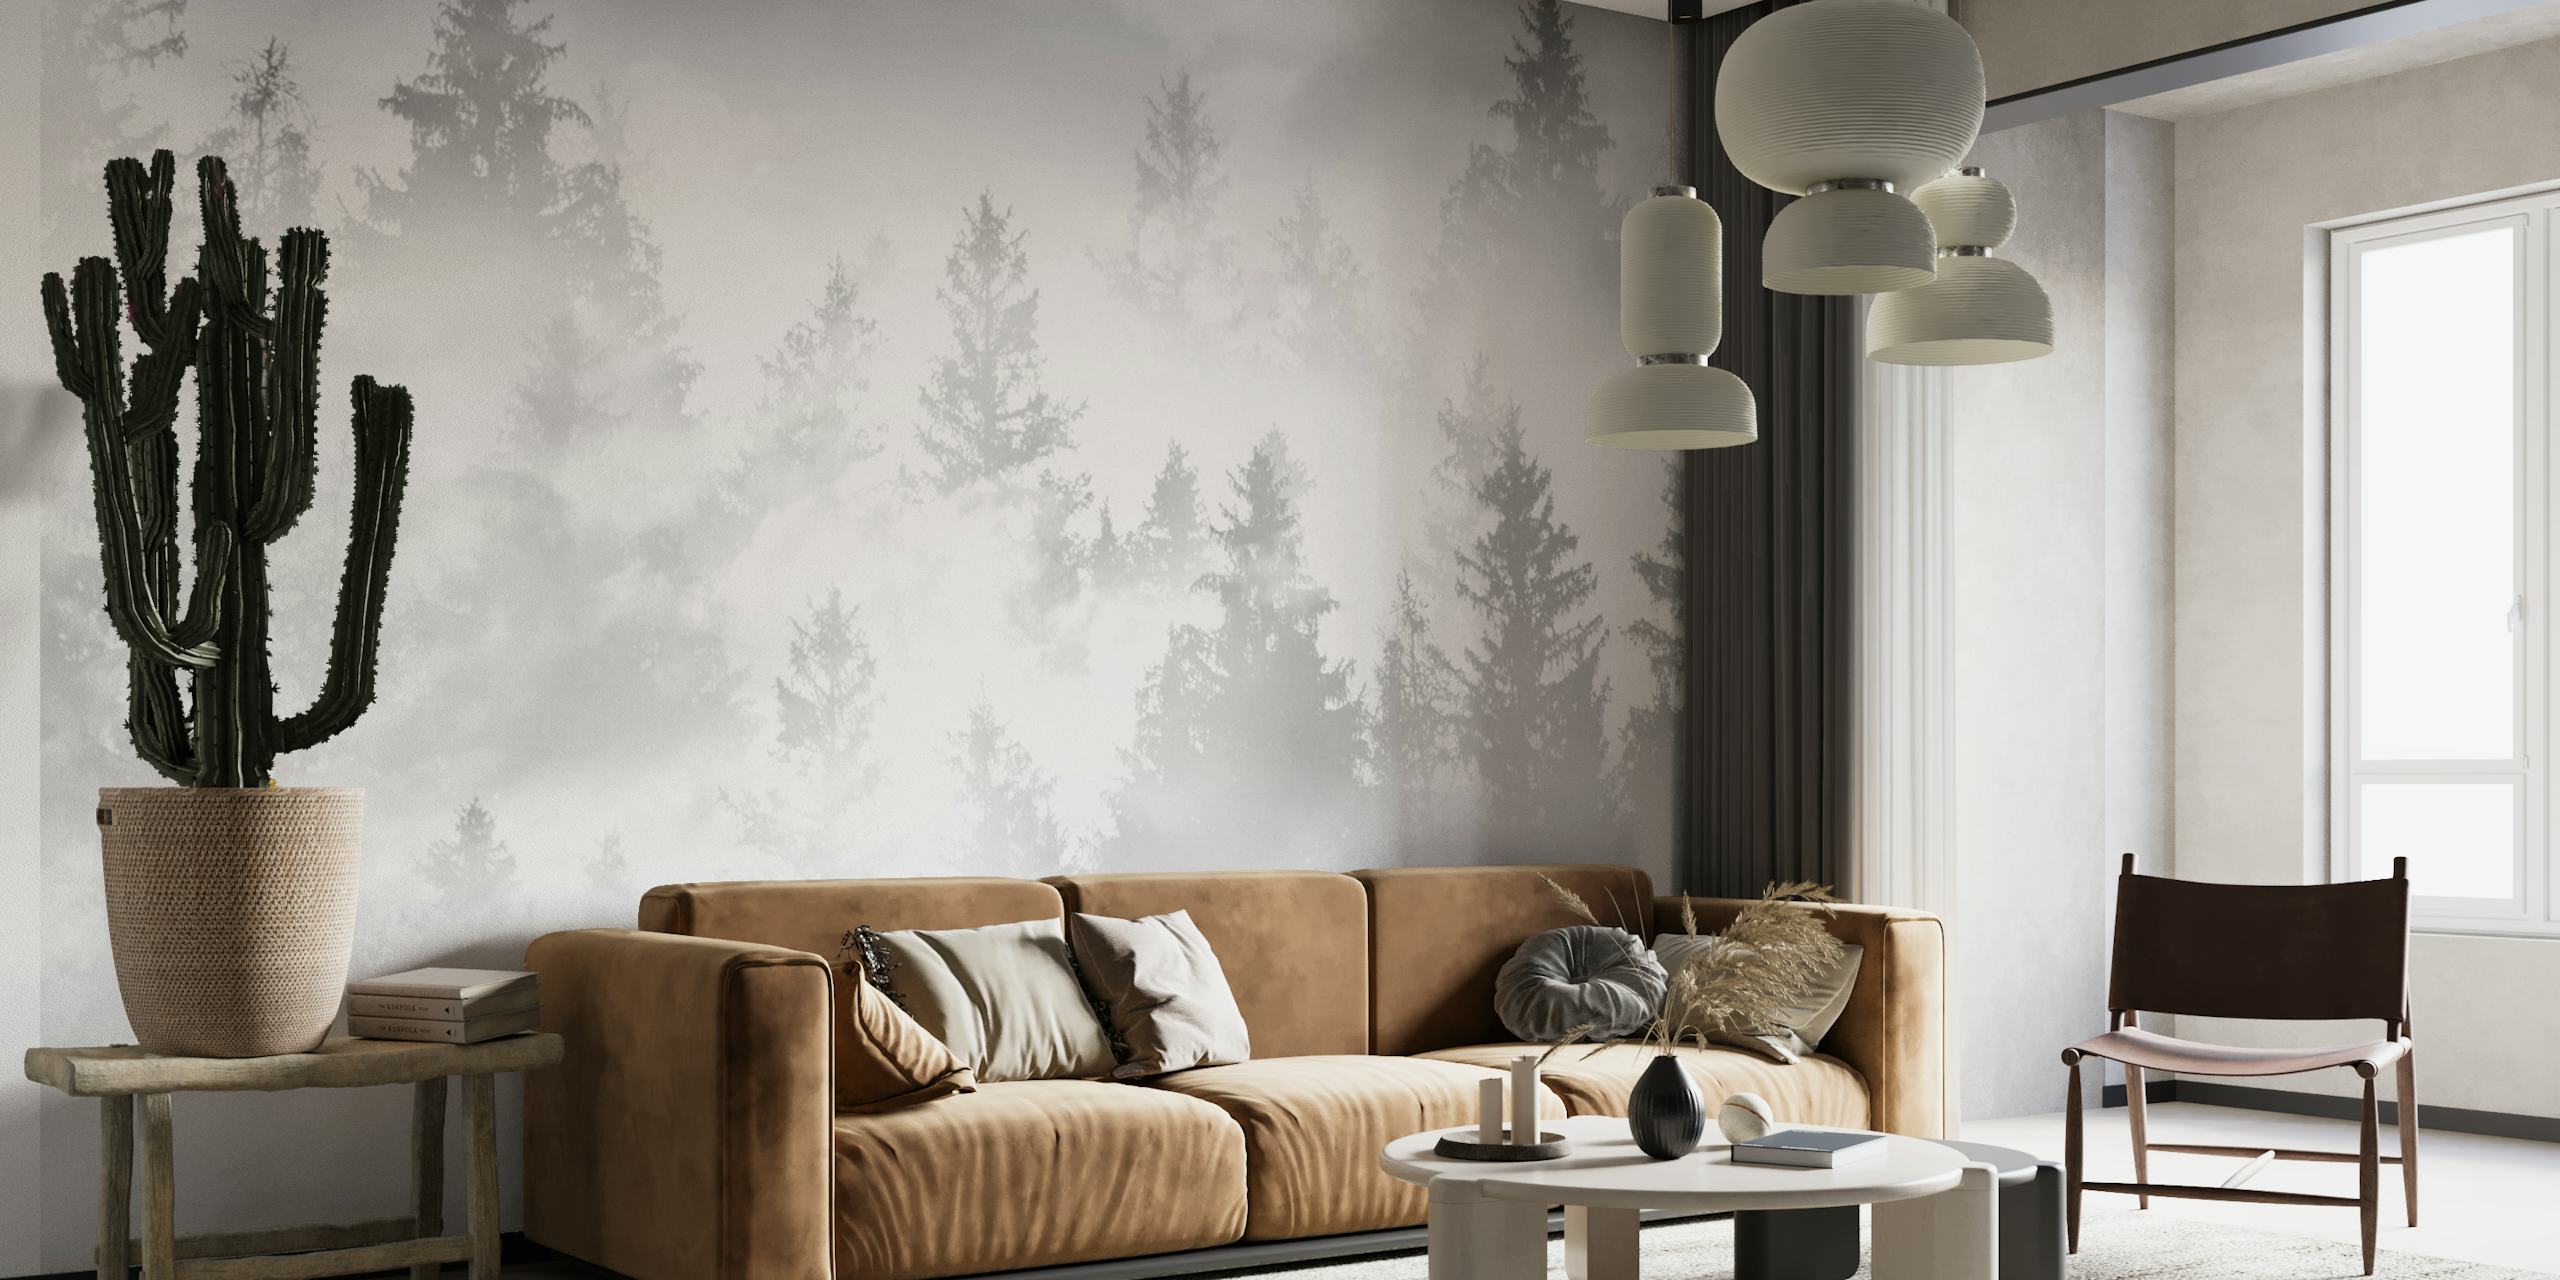 Fotomural vinílico de parede de floresta enevoada em tons suaves de cinza e branco.